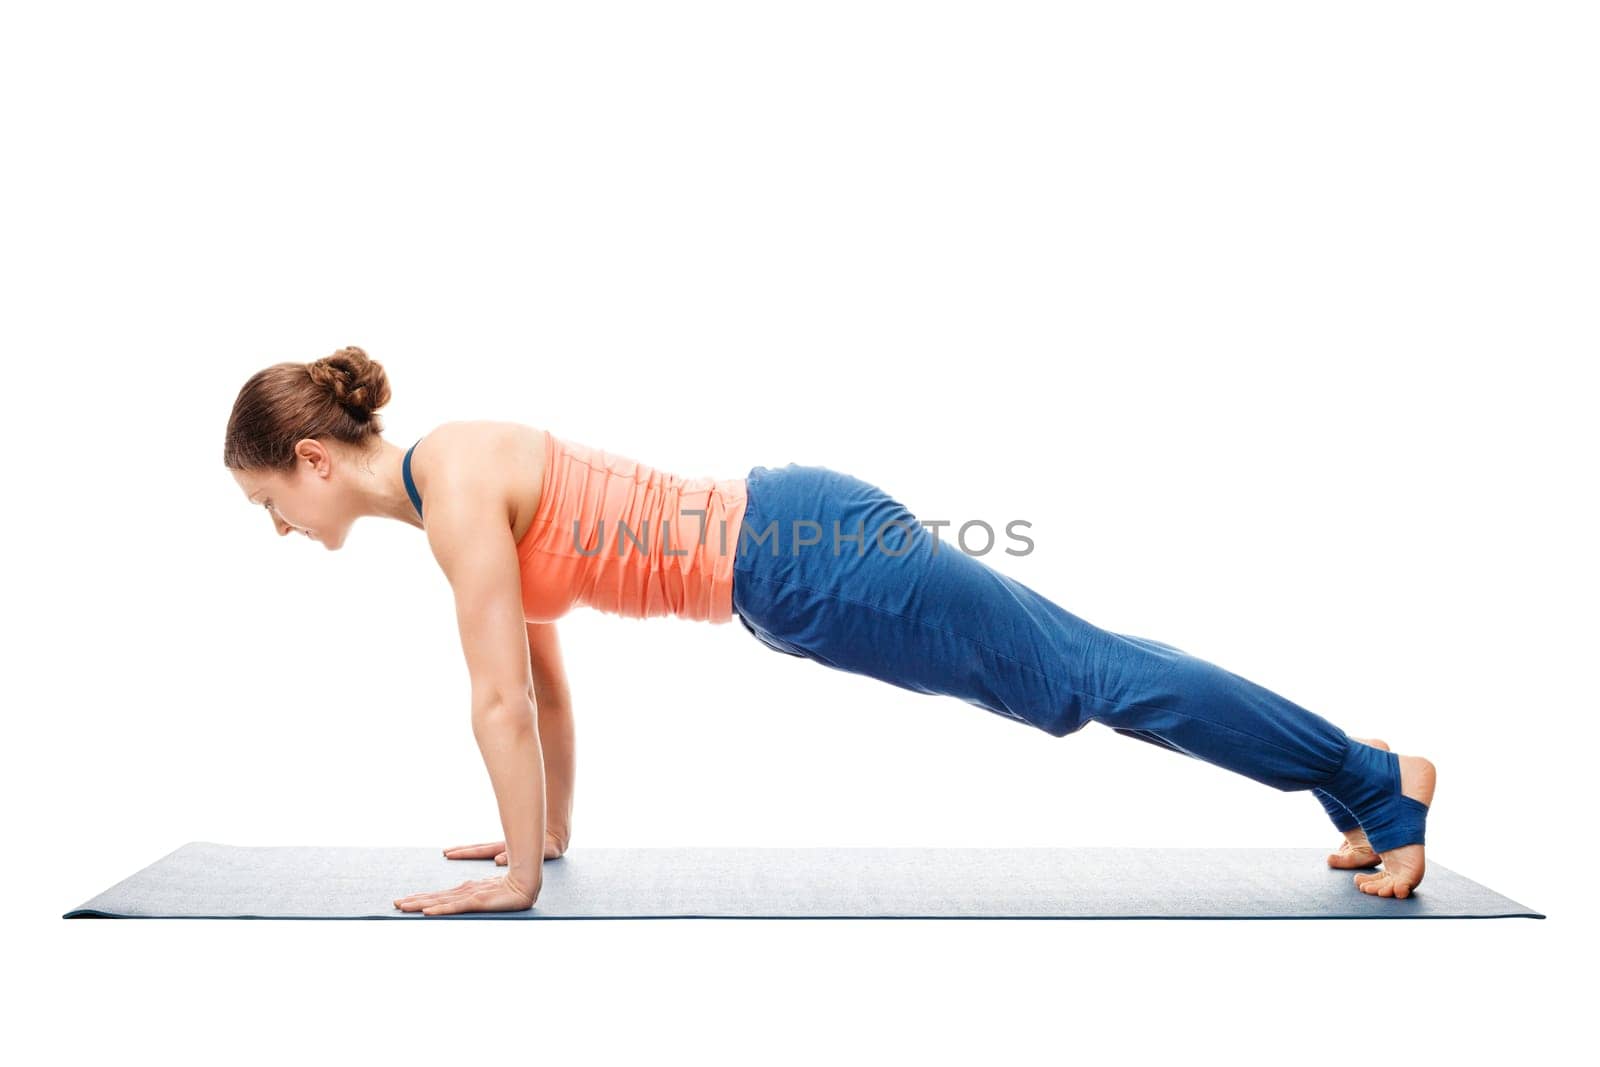 Woman doing yoga asana Utthita chaturanga dandasana (or phalakasana) - extended four-limbed posture plank pose isolated on white background